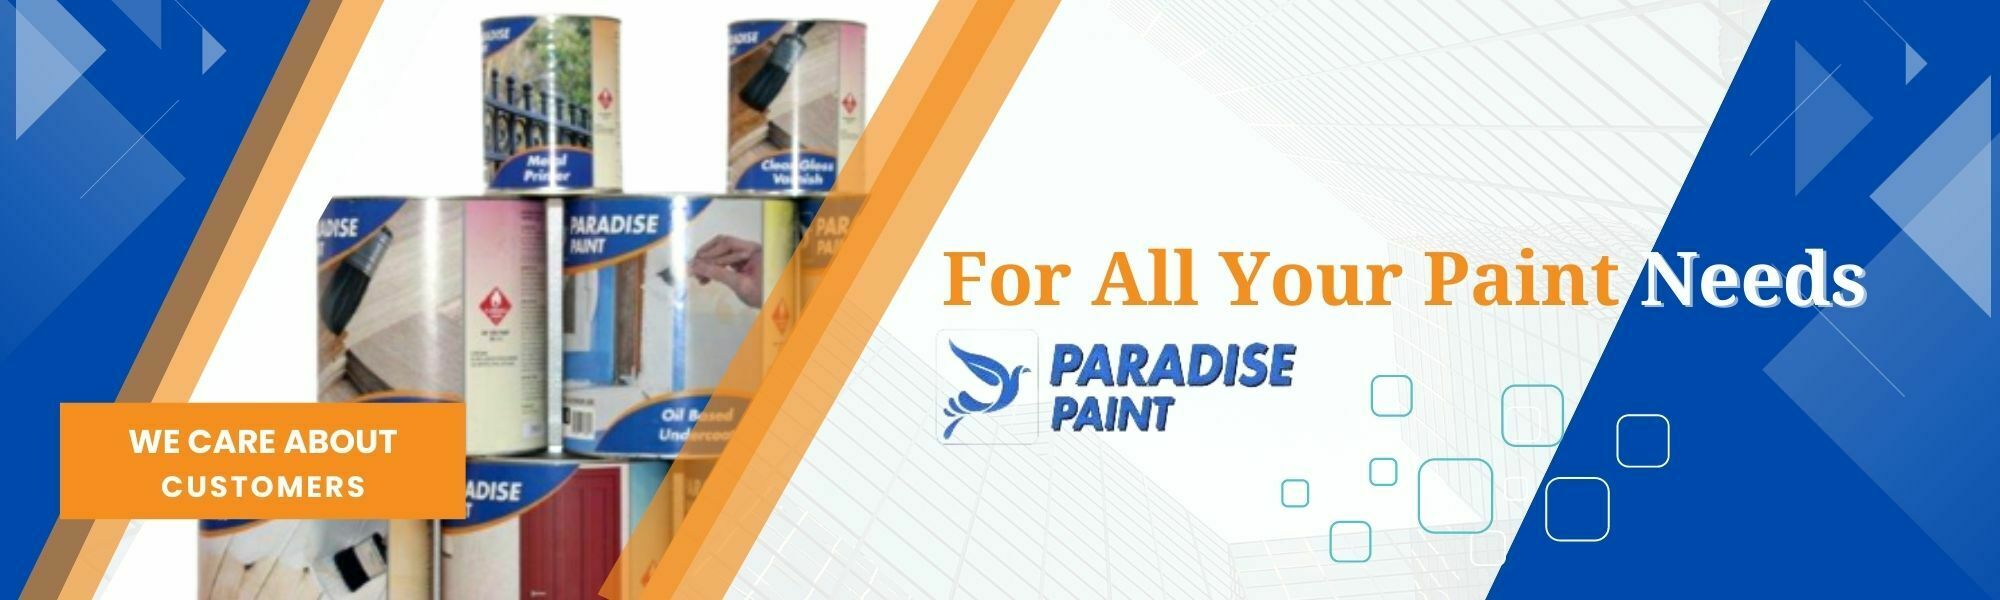 paradise paint banner